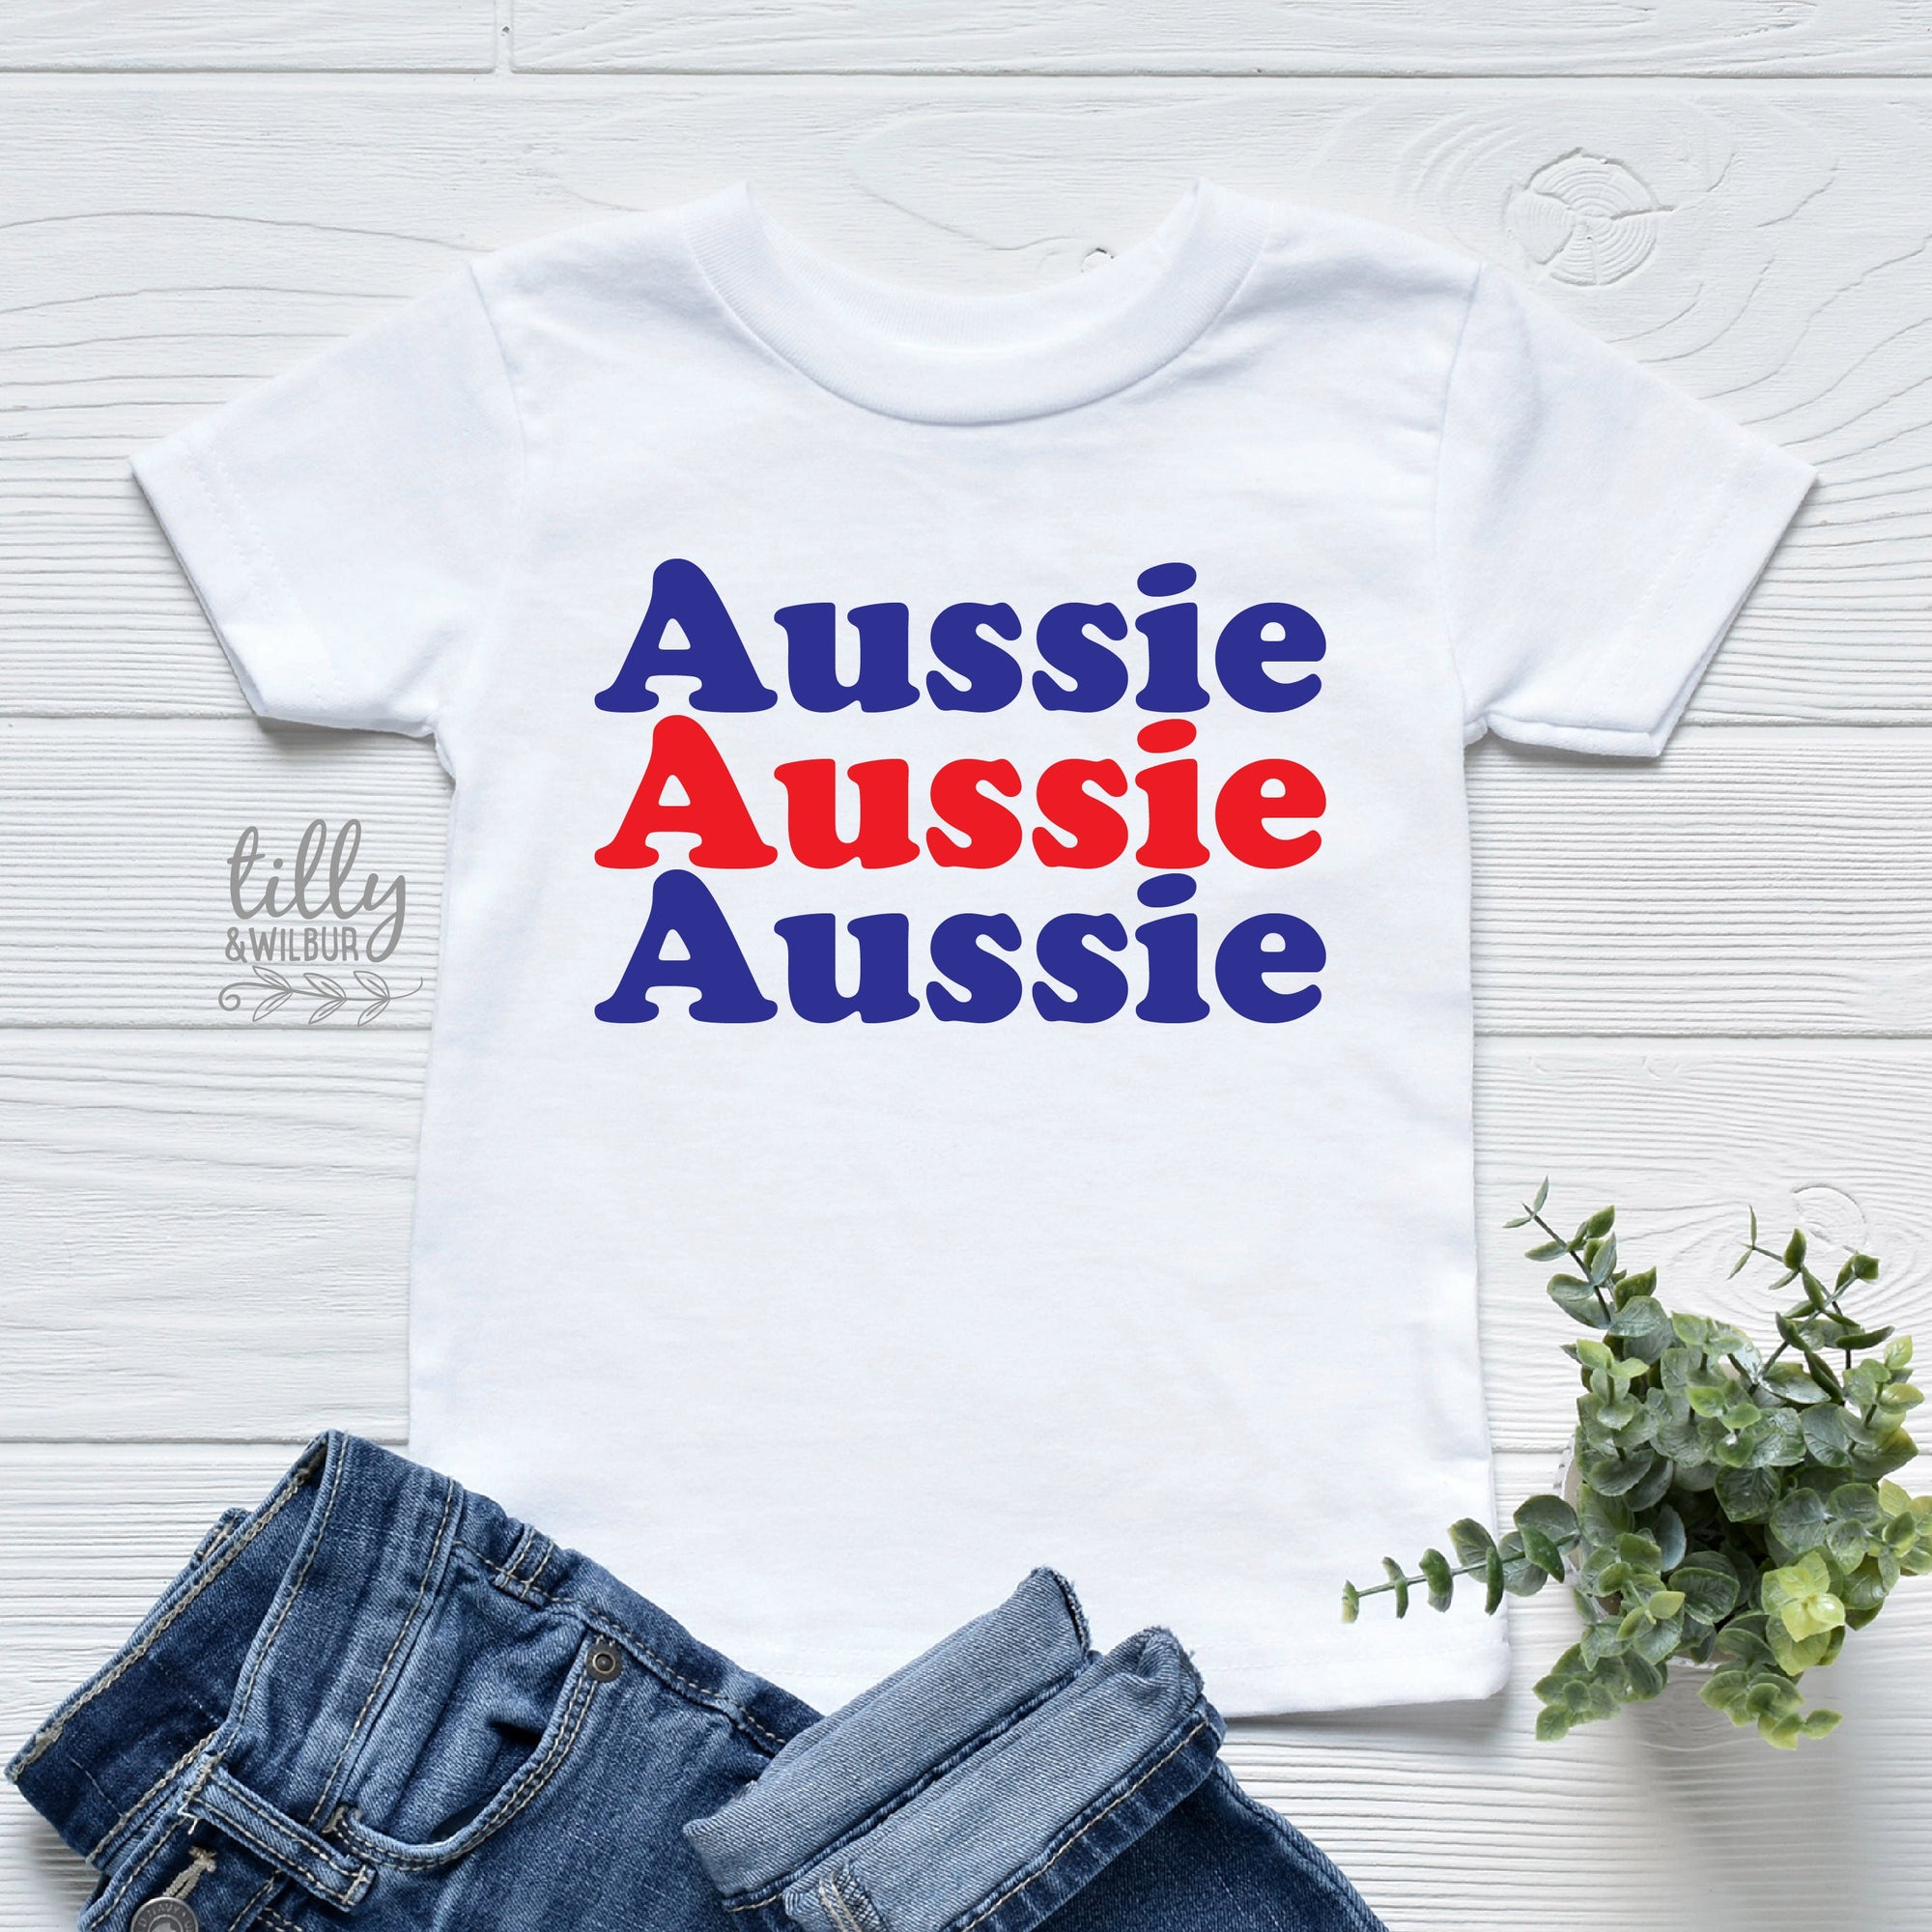 Aussie Aussie Aussie Kids T-Shirt, Australia Day T-Shirt, Happy Australia Day, Australia Day Gift, Australiana, Aussie Themed Gift, Straya